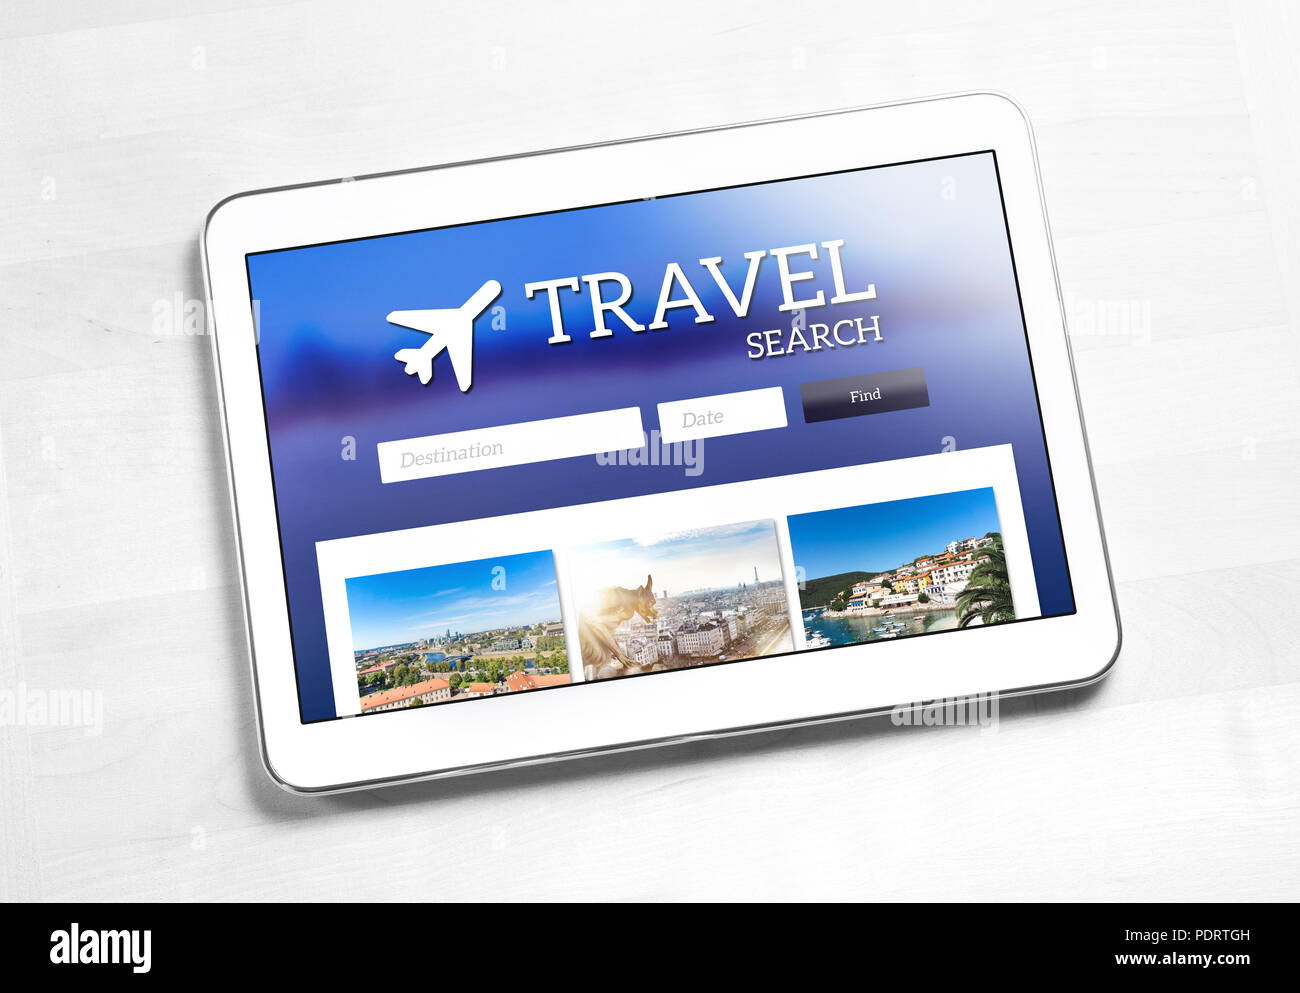 La ricerca di viaggi applicazione o sito web su tablet schermo. App per trovare voli economici, hotel o pacchetto vacanza su internet. Agenzia di viaggi online pagina web. Foto Stock